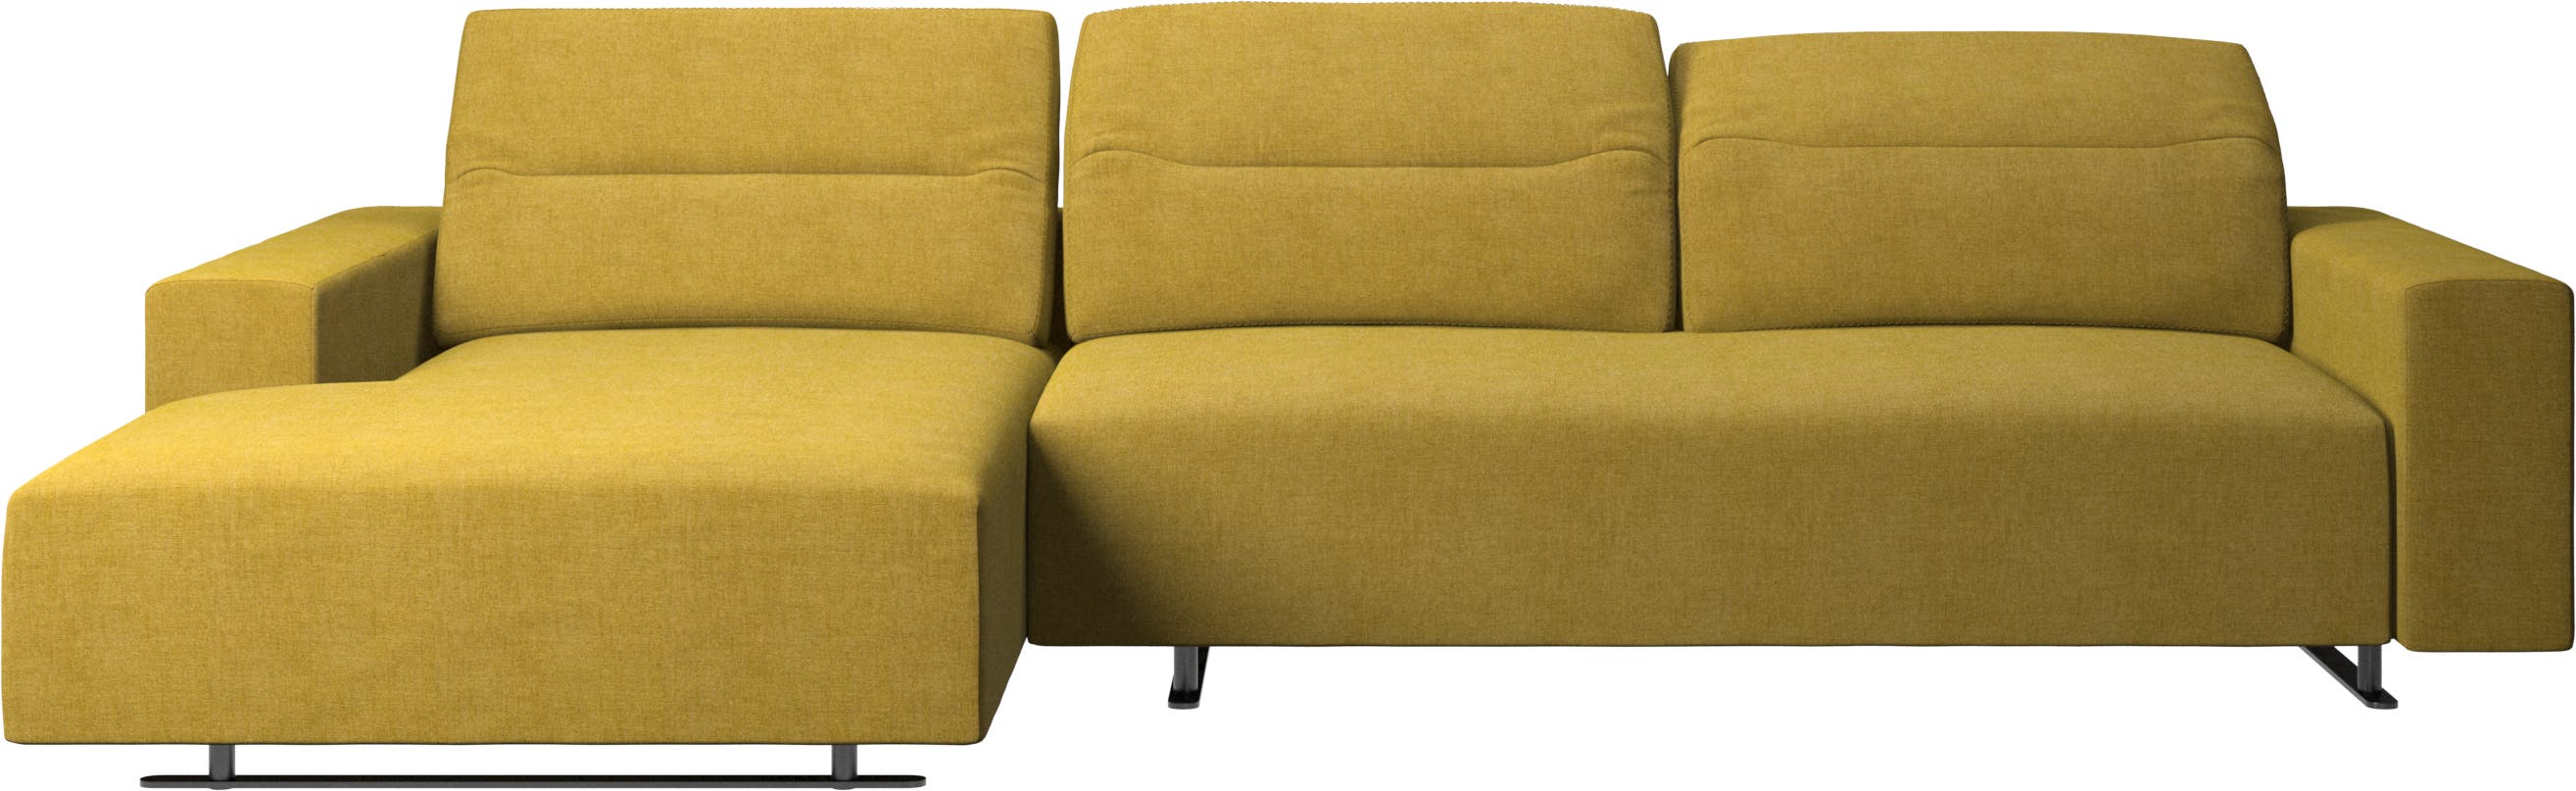 Hampton Sofa mit verstellbarem Rückenpolster, Ruhemodul und Staufach an beiden Seiten